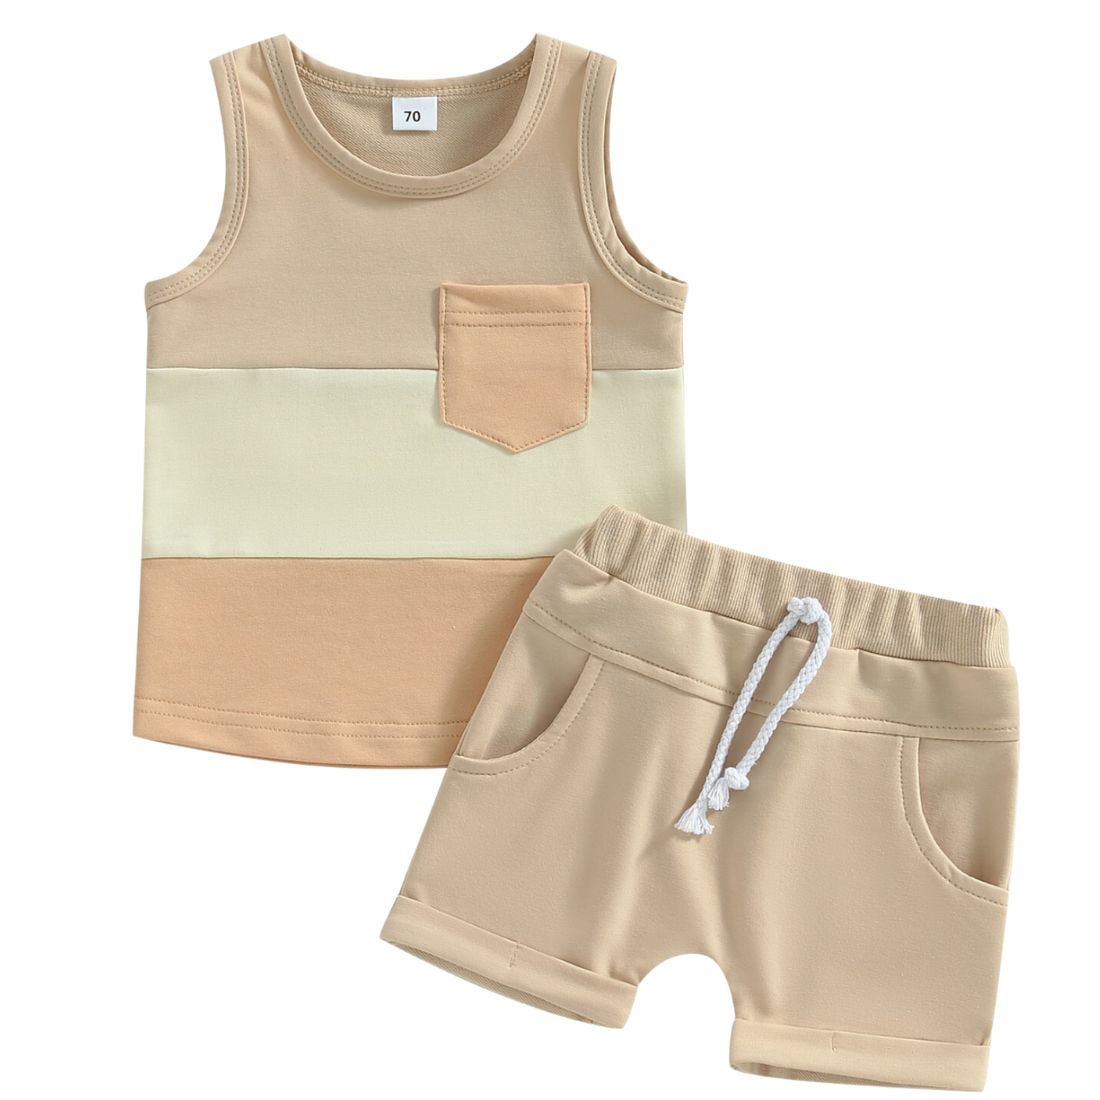 Sleeveless Contrast Baby Clothing Set